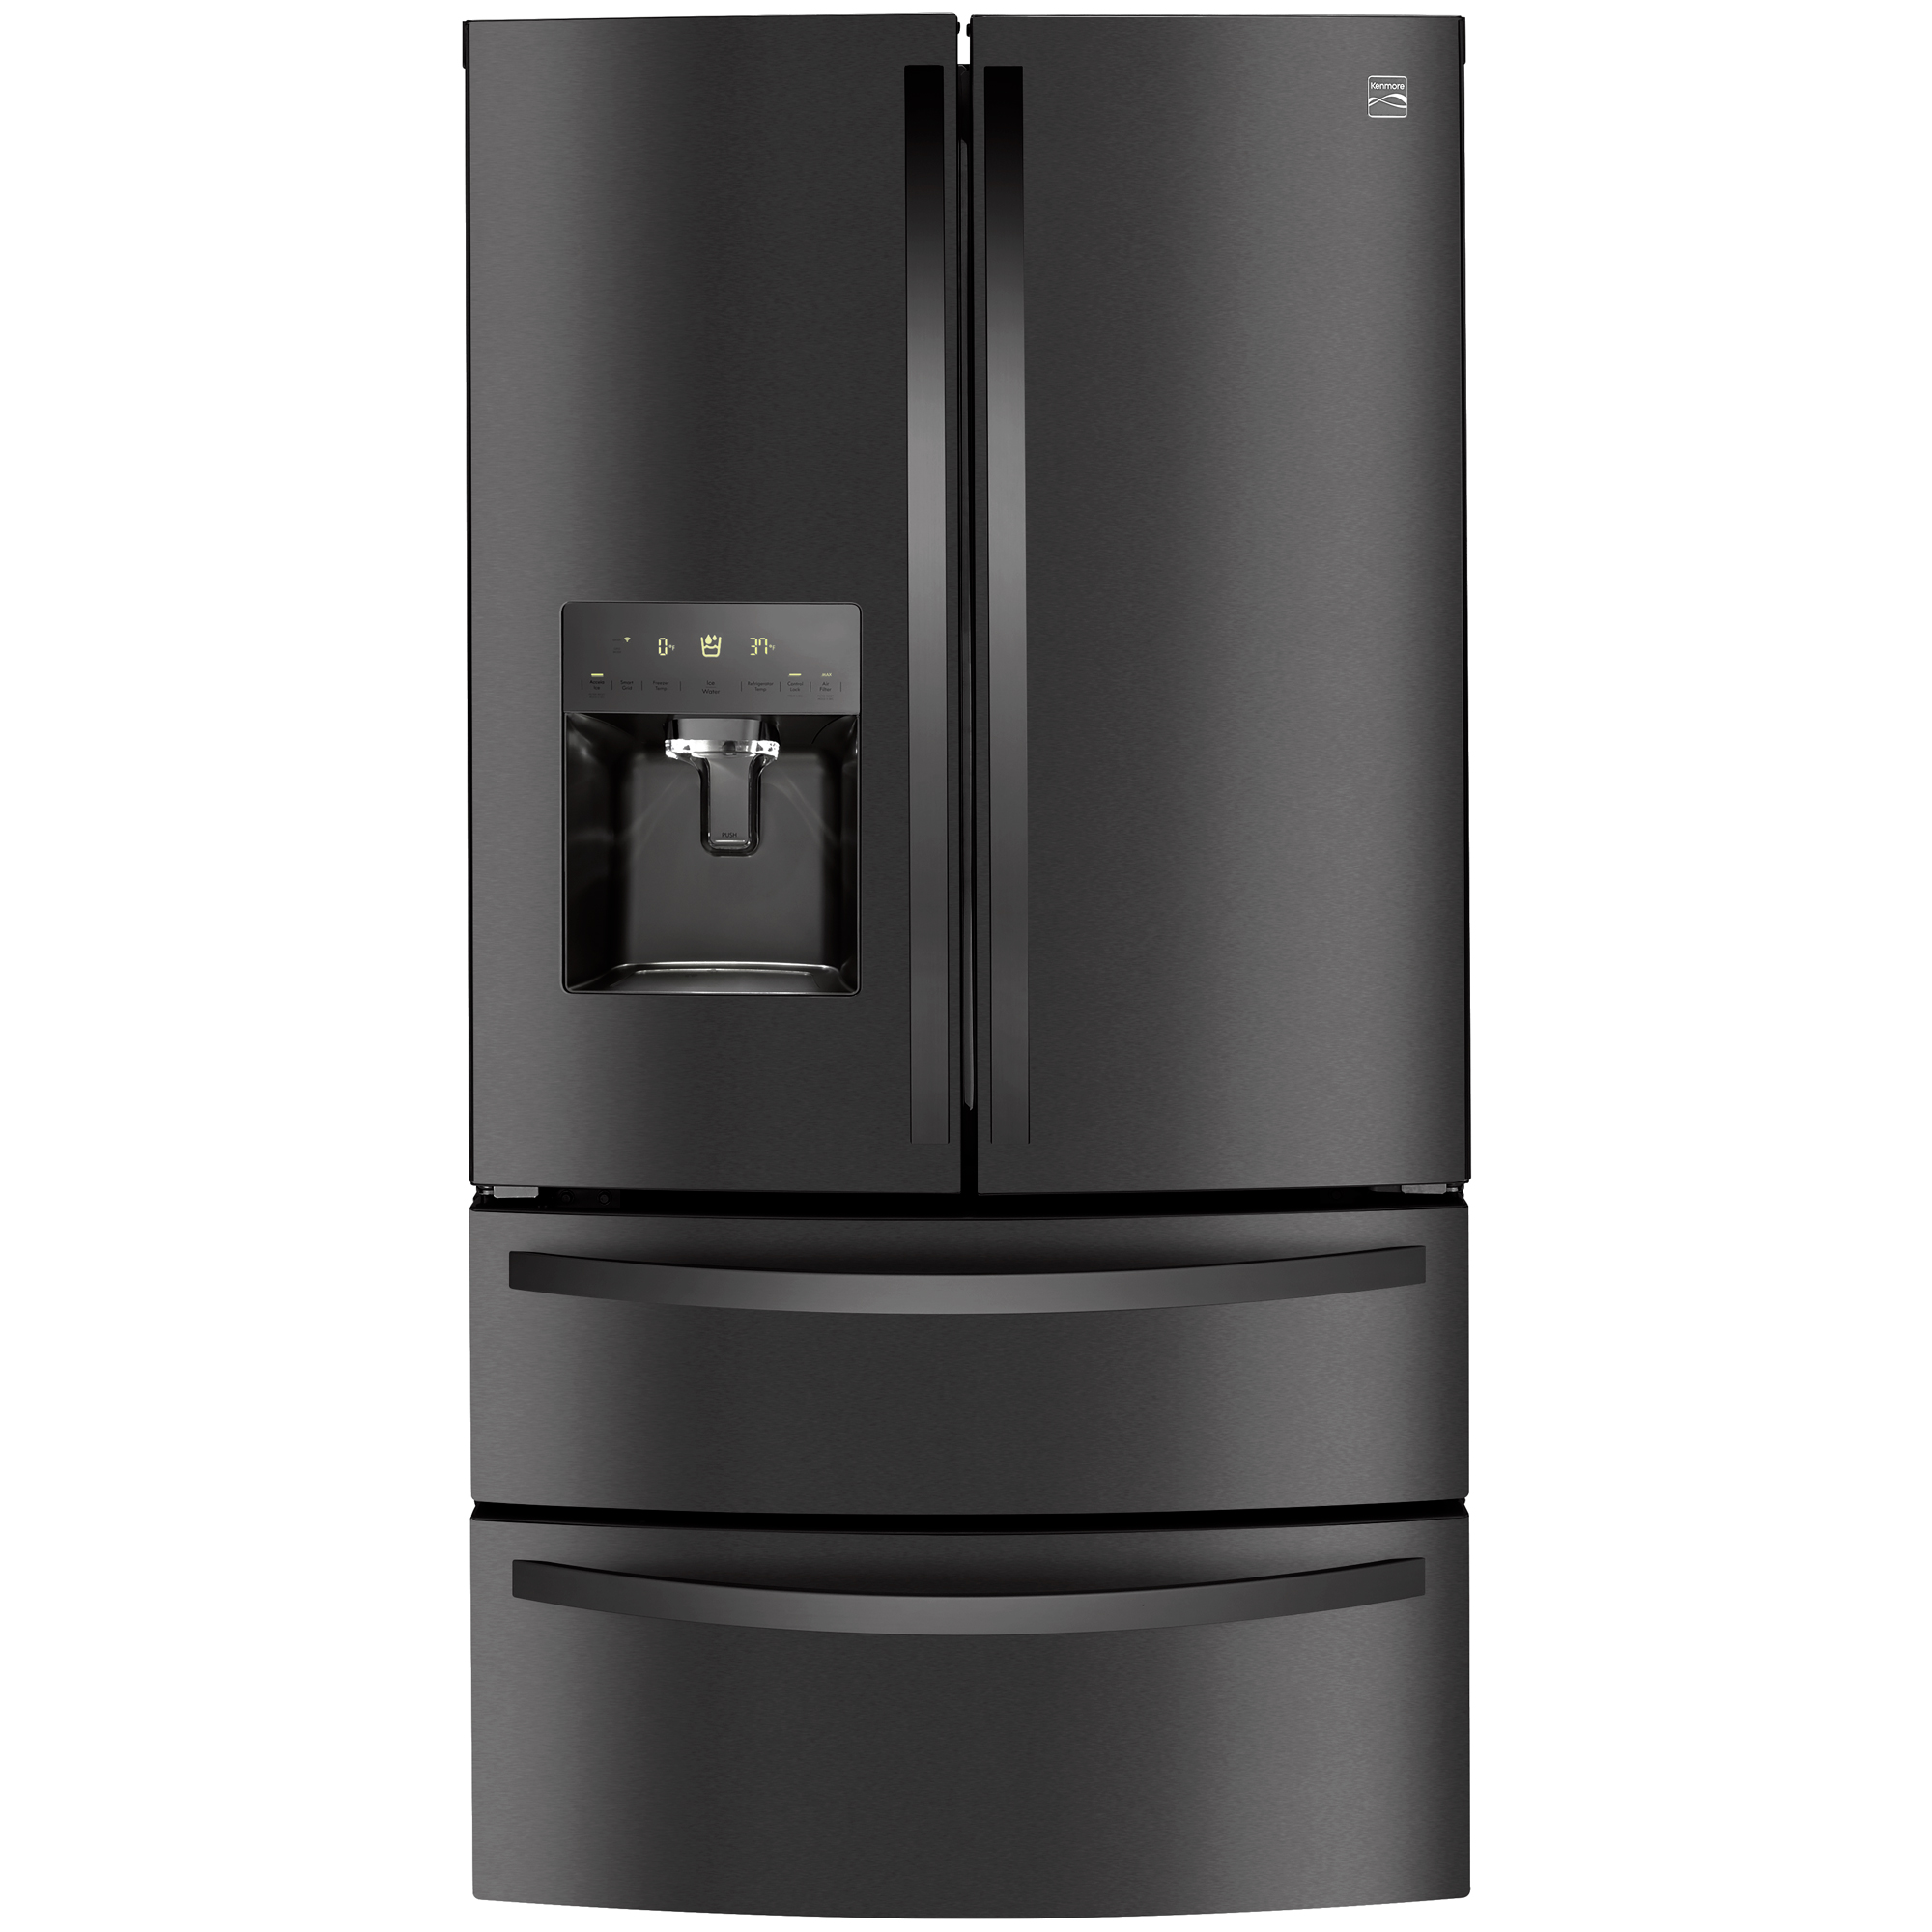 Kenmore 72597 27.8 cu. ft. Smart 4-Door Refrigerator in Black Stainless Steel